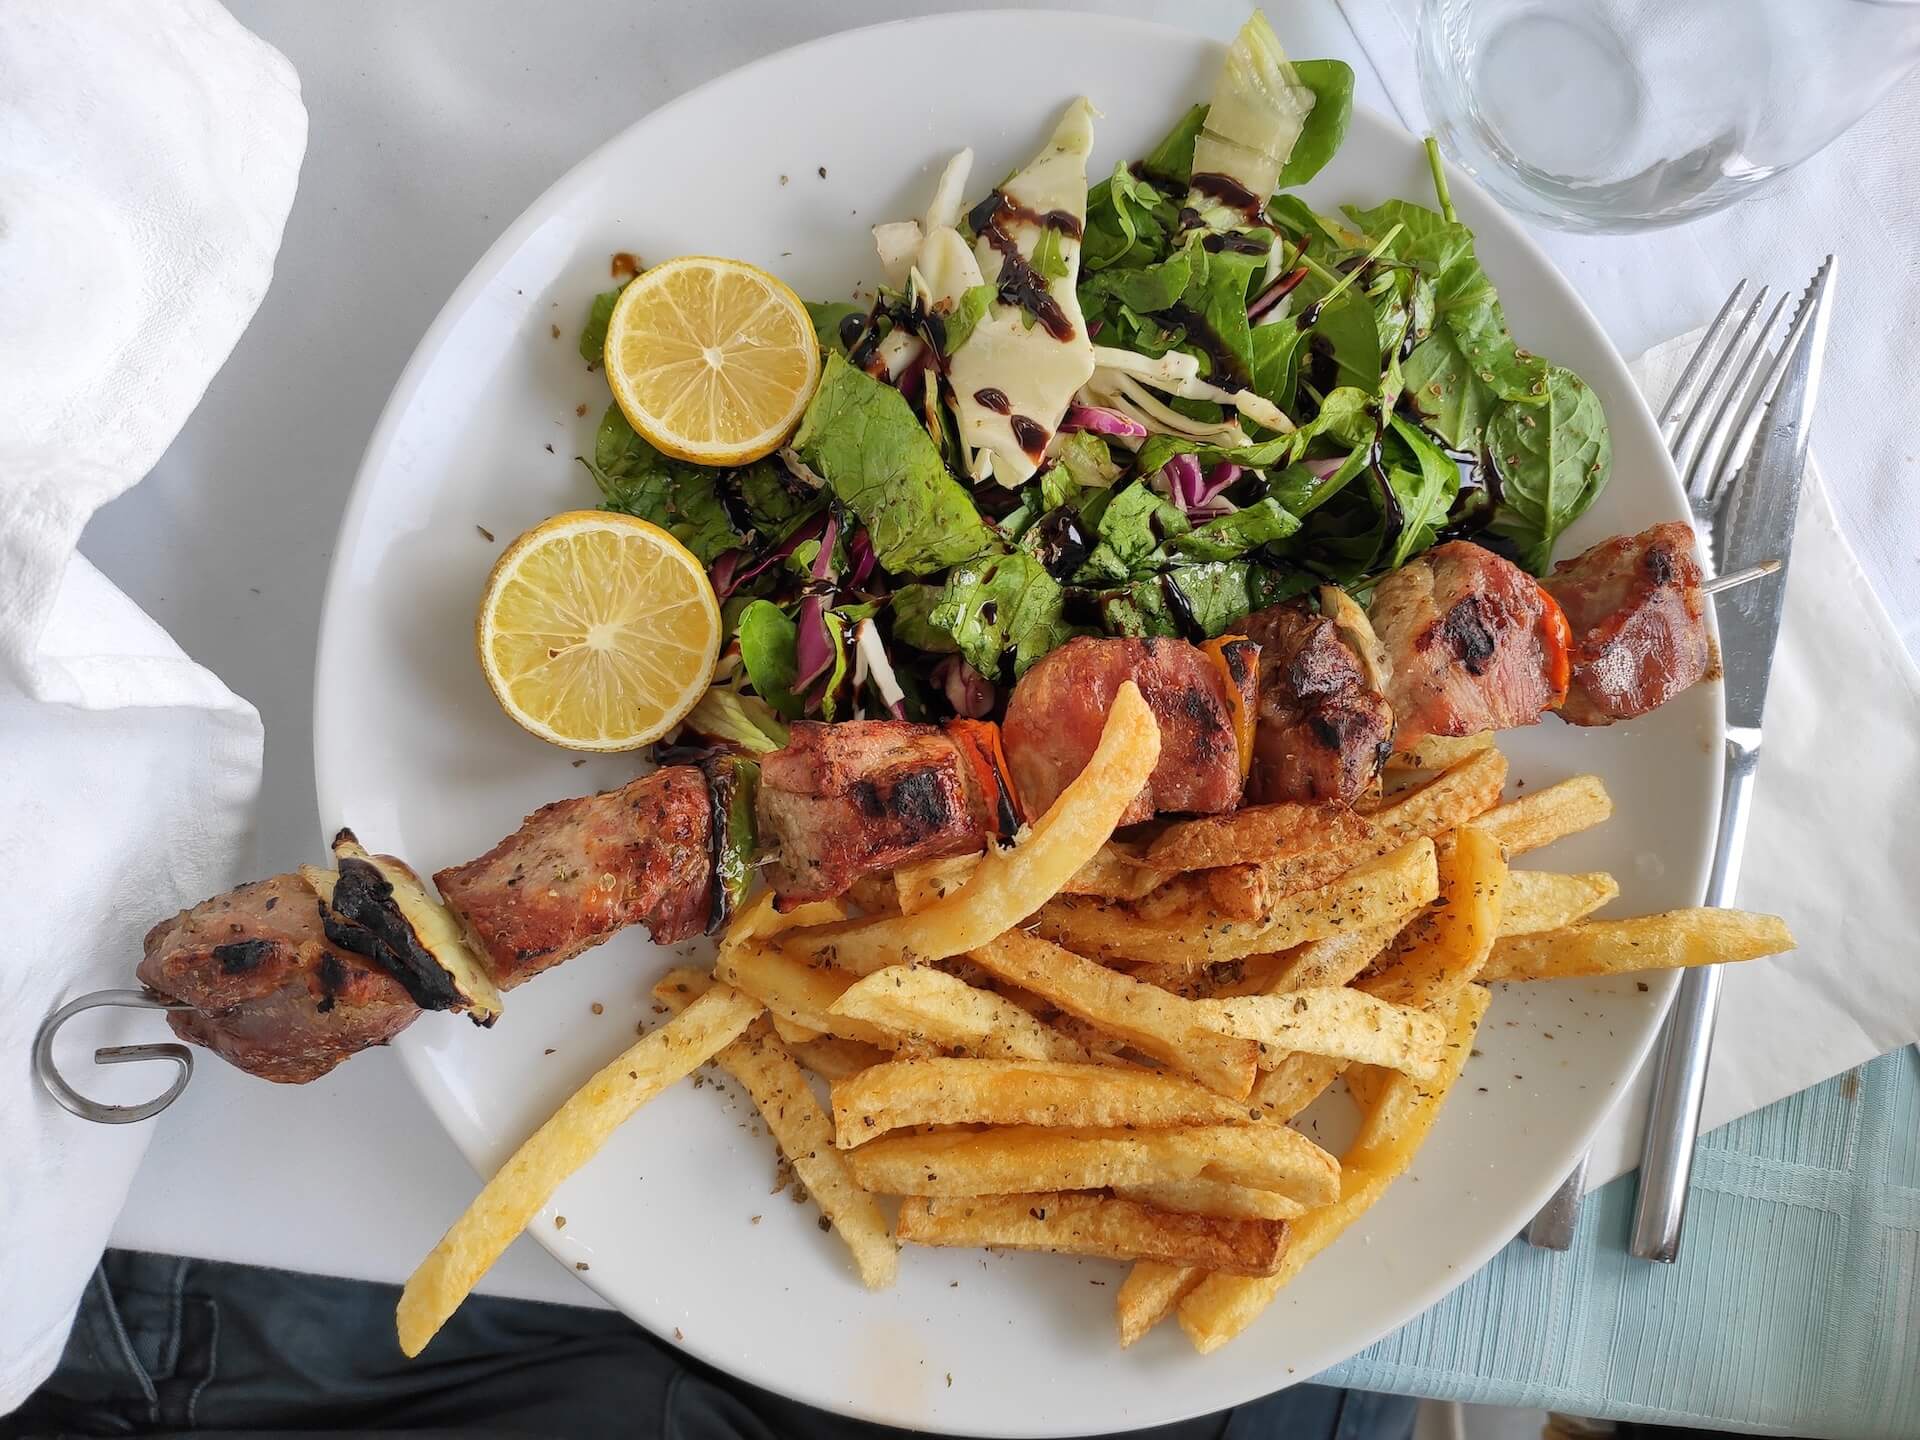 A plate of souvlaki, fries, and salad